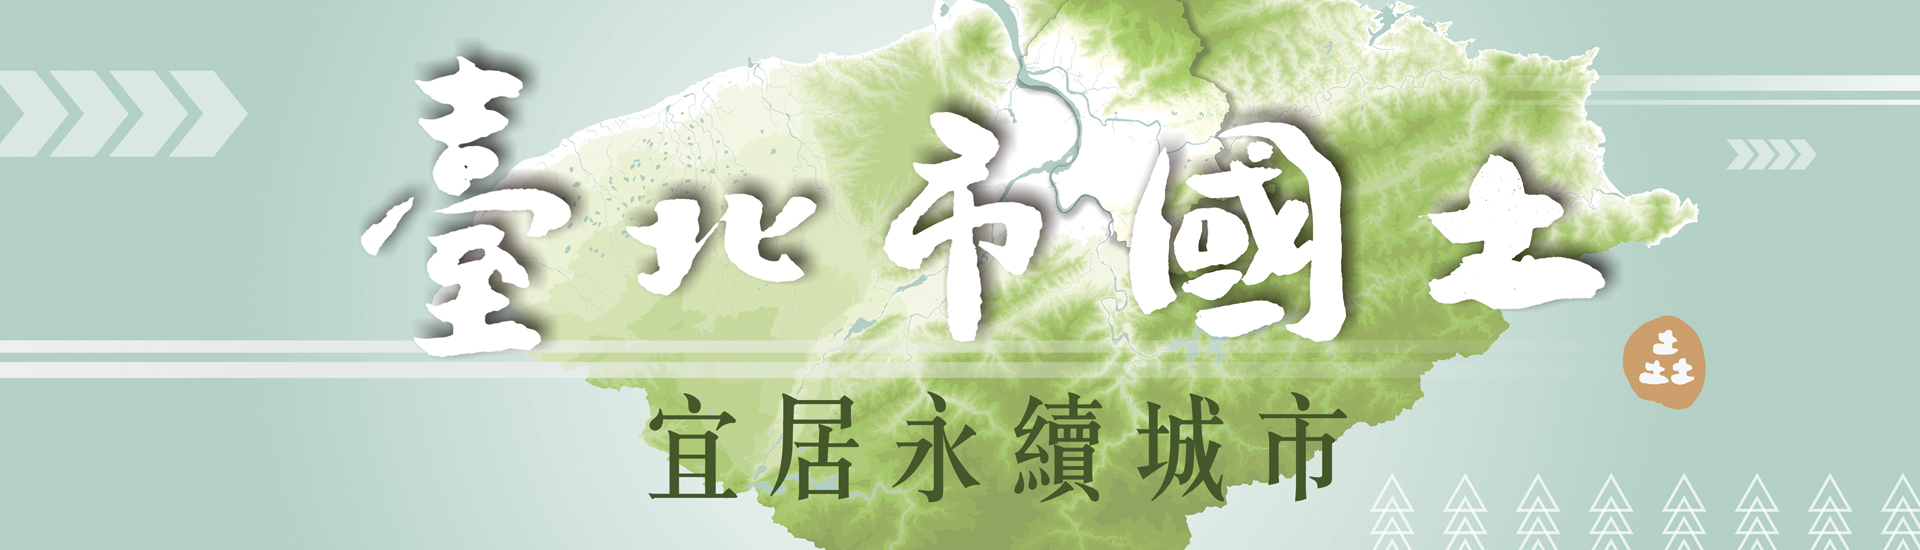 台北市國土宜居永續城市宣導圖片